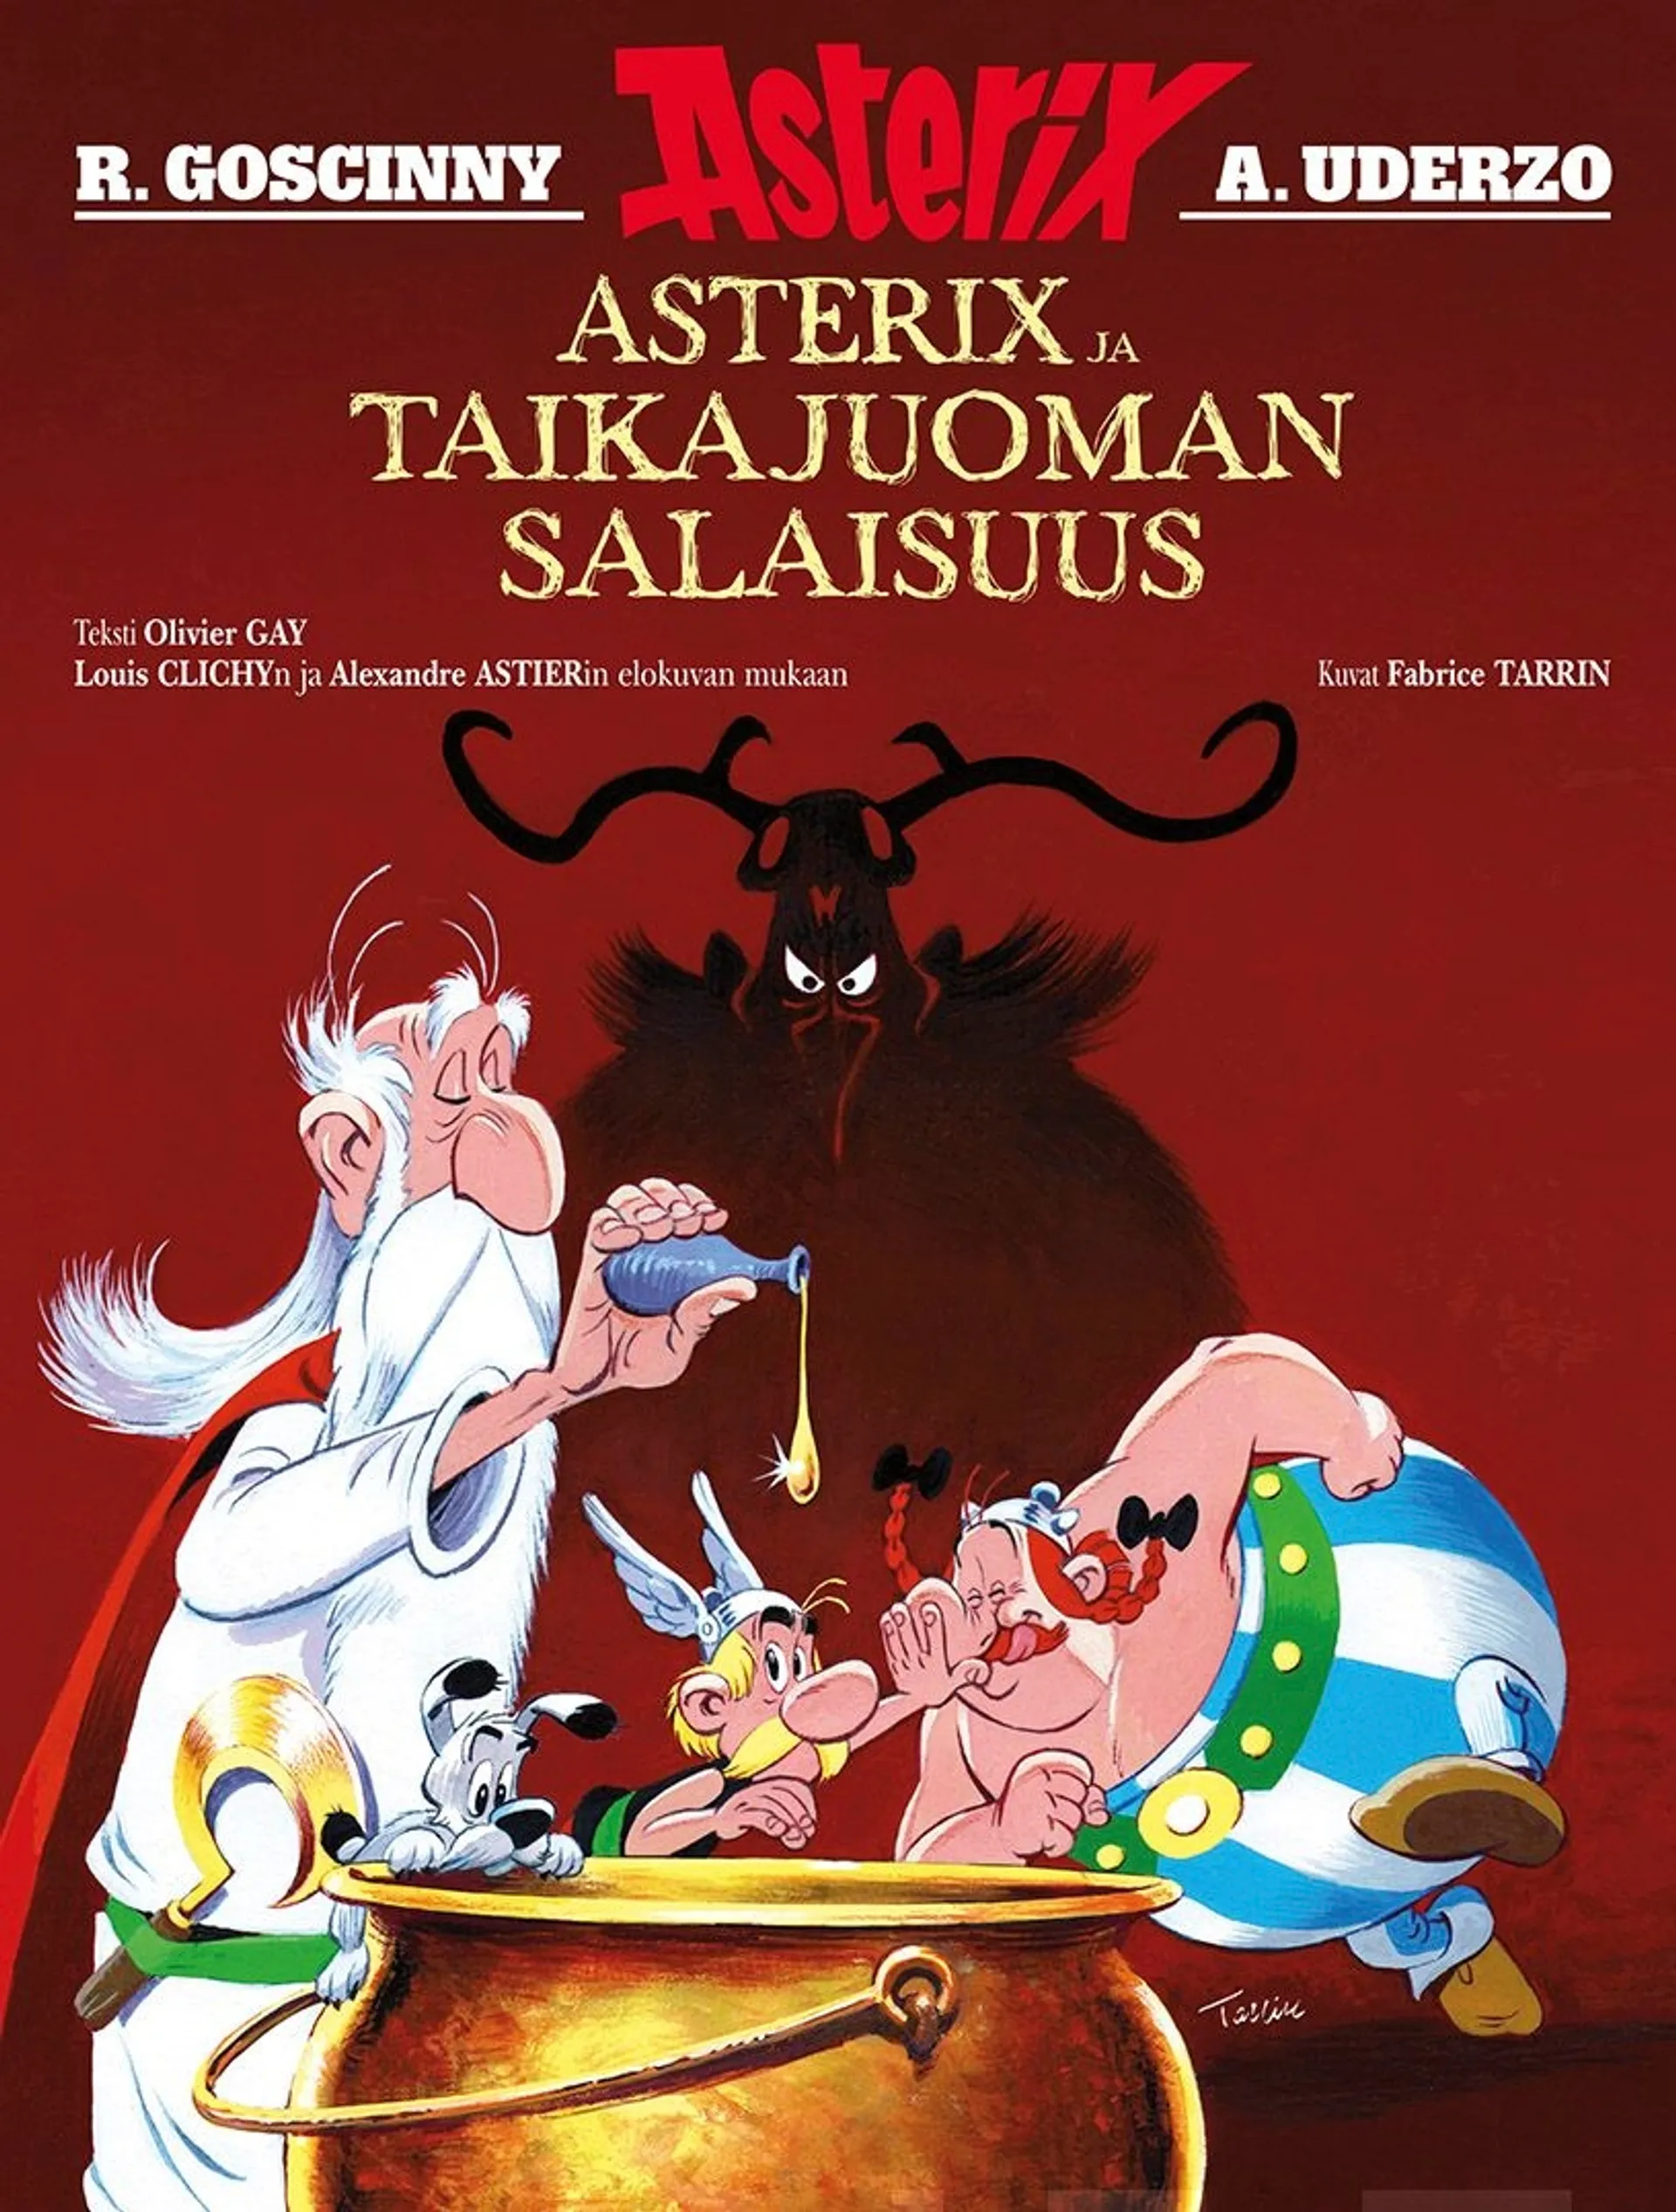 Goscinny, Asterix ja taikajuoman salaisuus